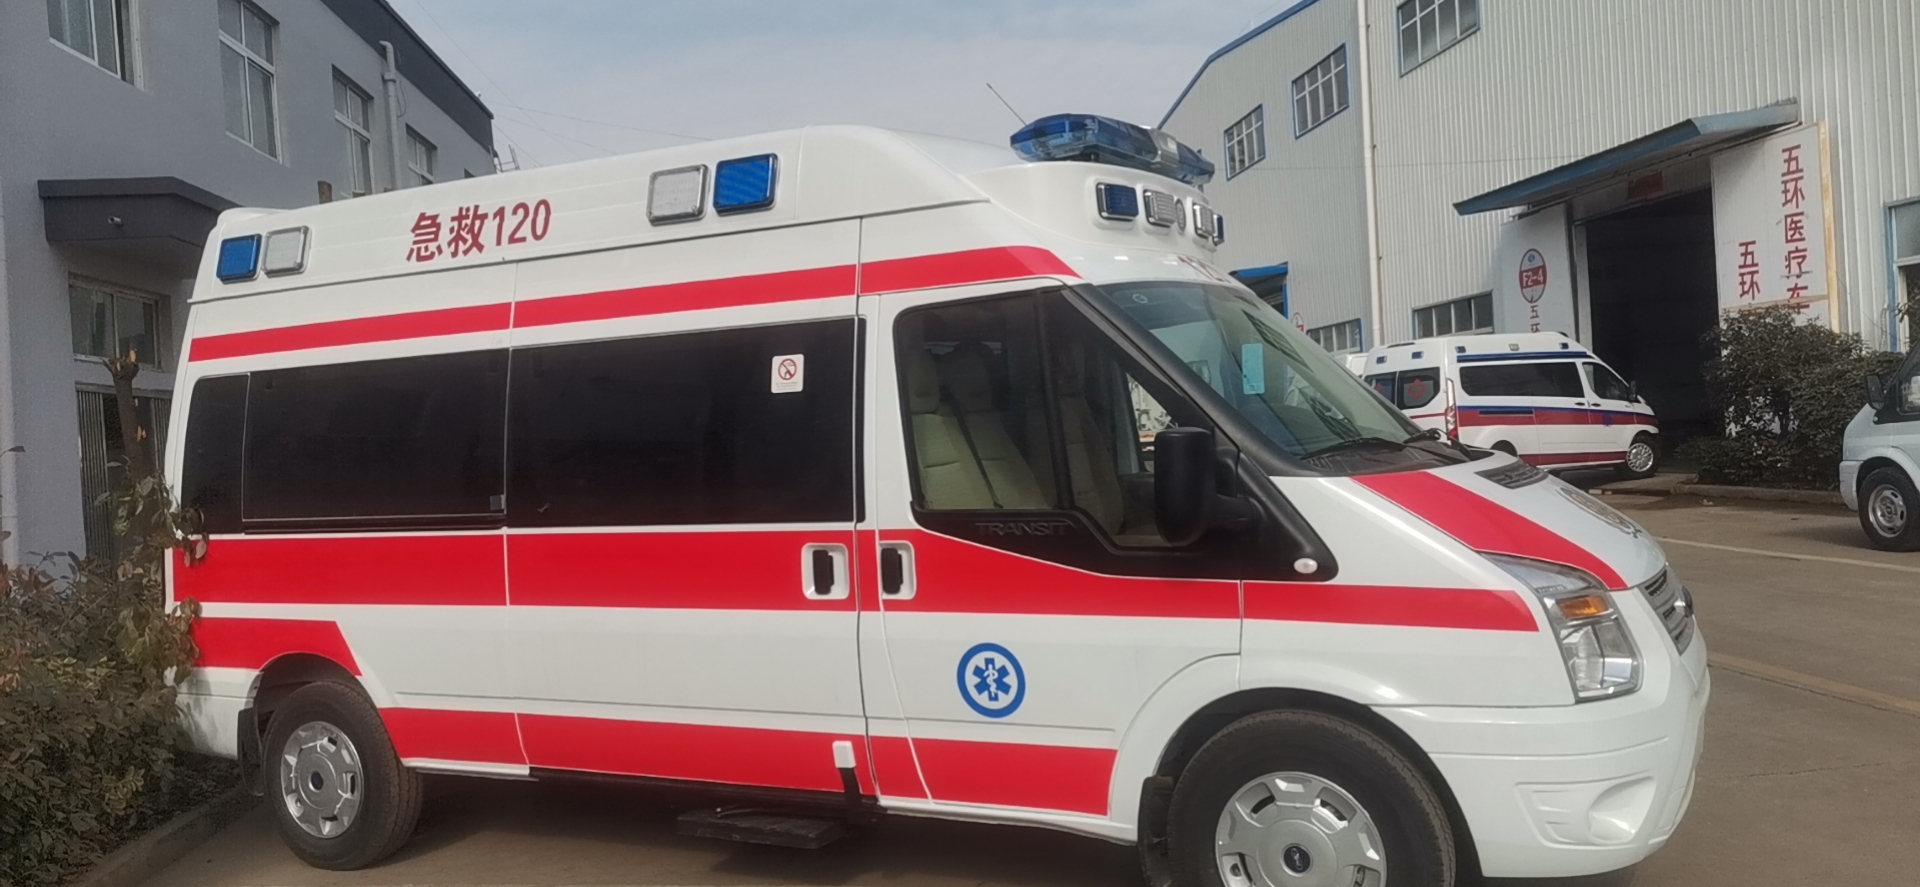 救护车改装生产销售与售后服务